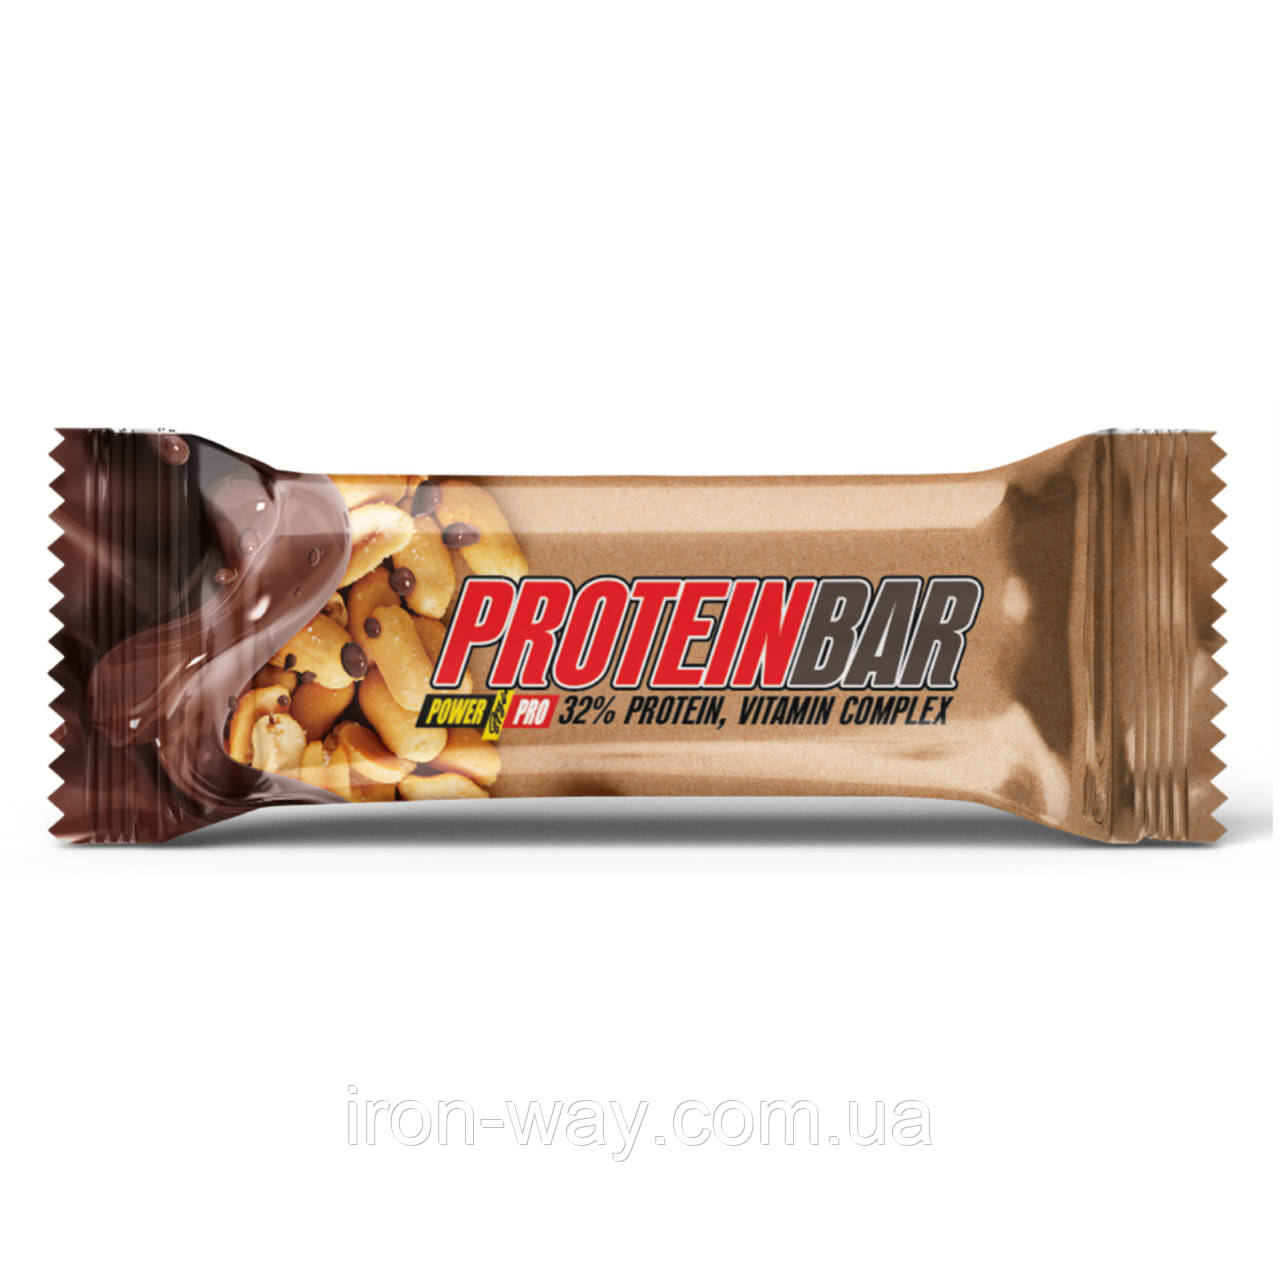 Protein Bar 32% - 20x60g Peanut Caramel